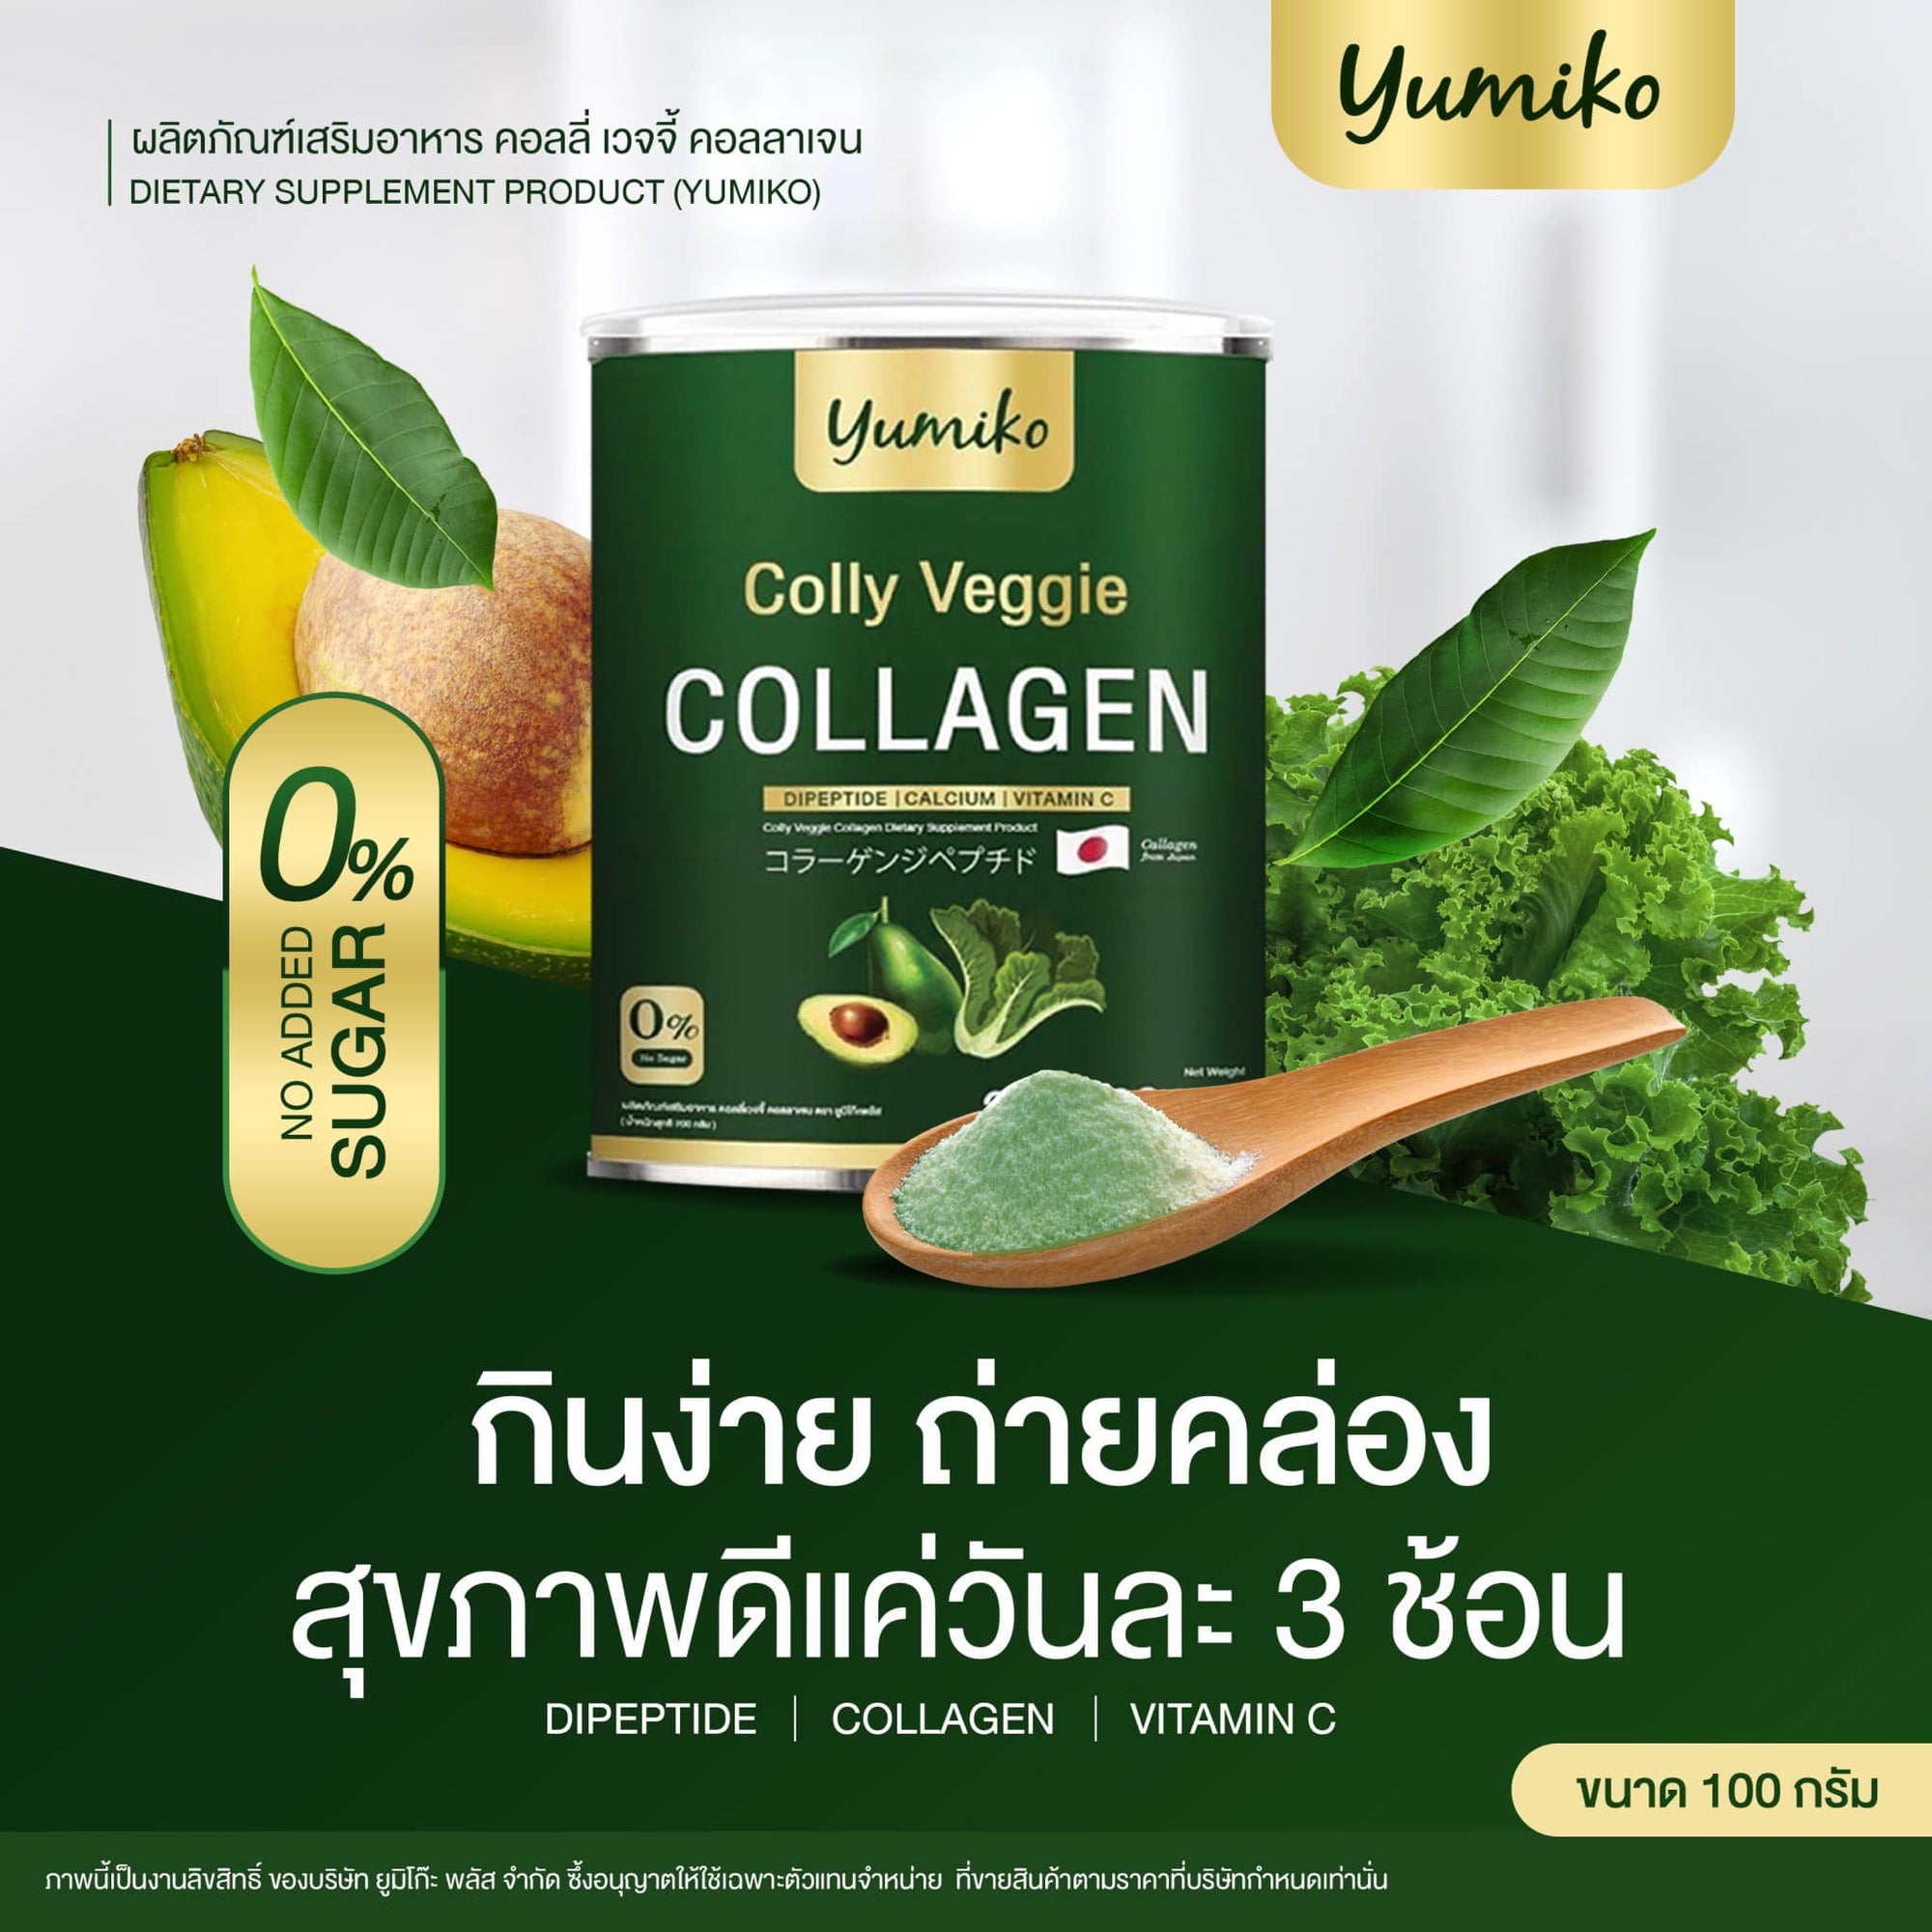 Premium collagen powder from Yumiko Colly Veggie